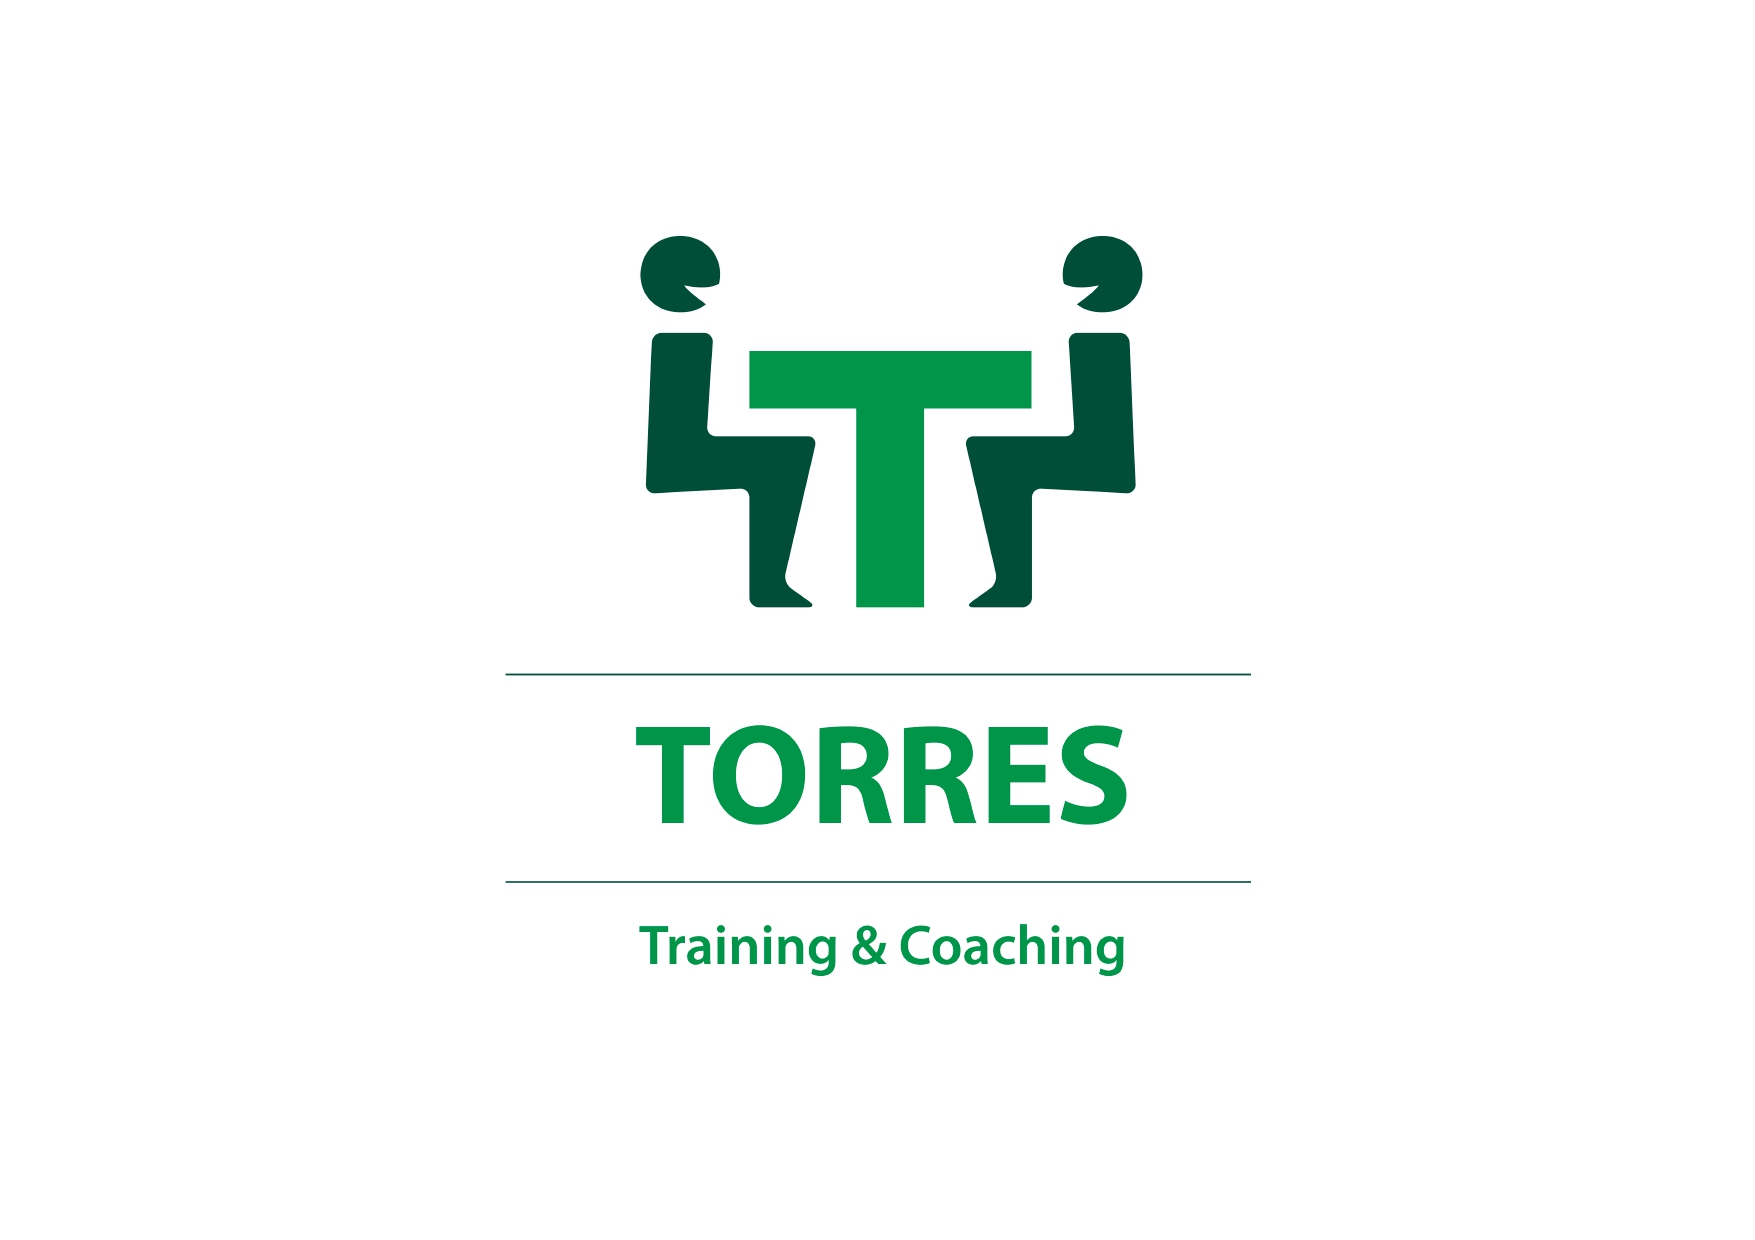 TORRES training & coaching